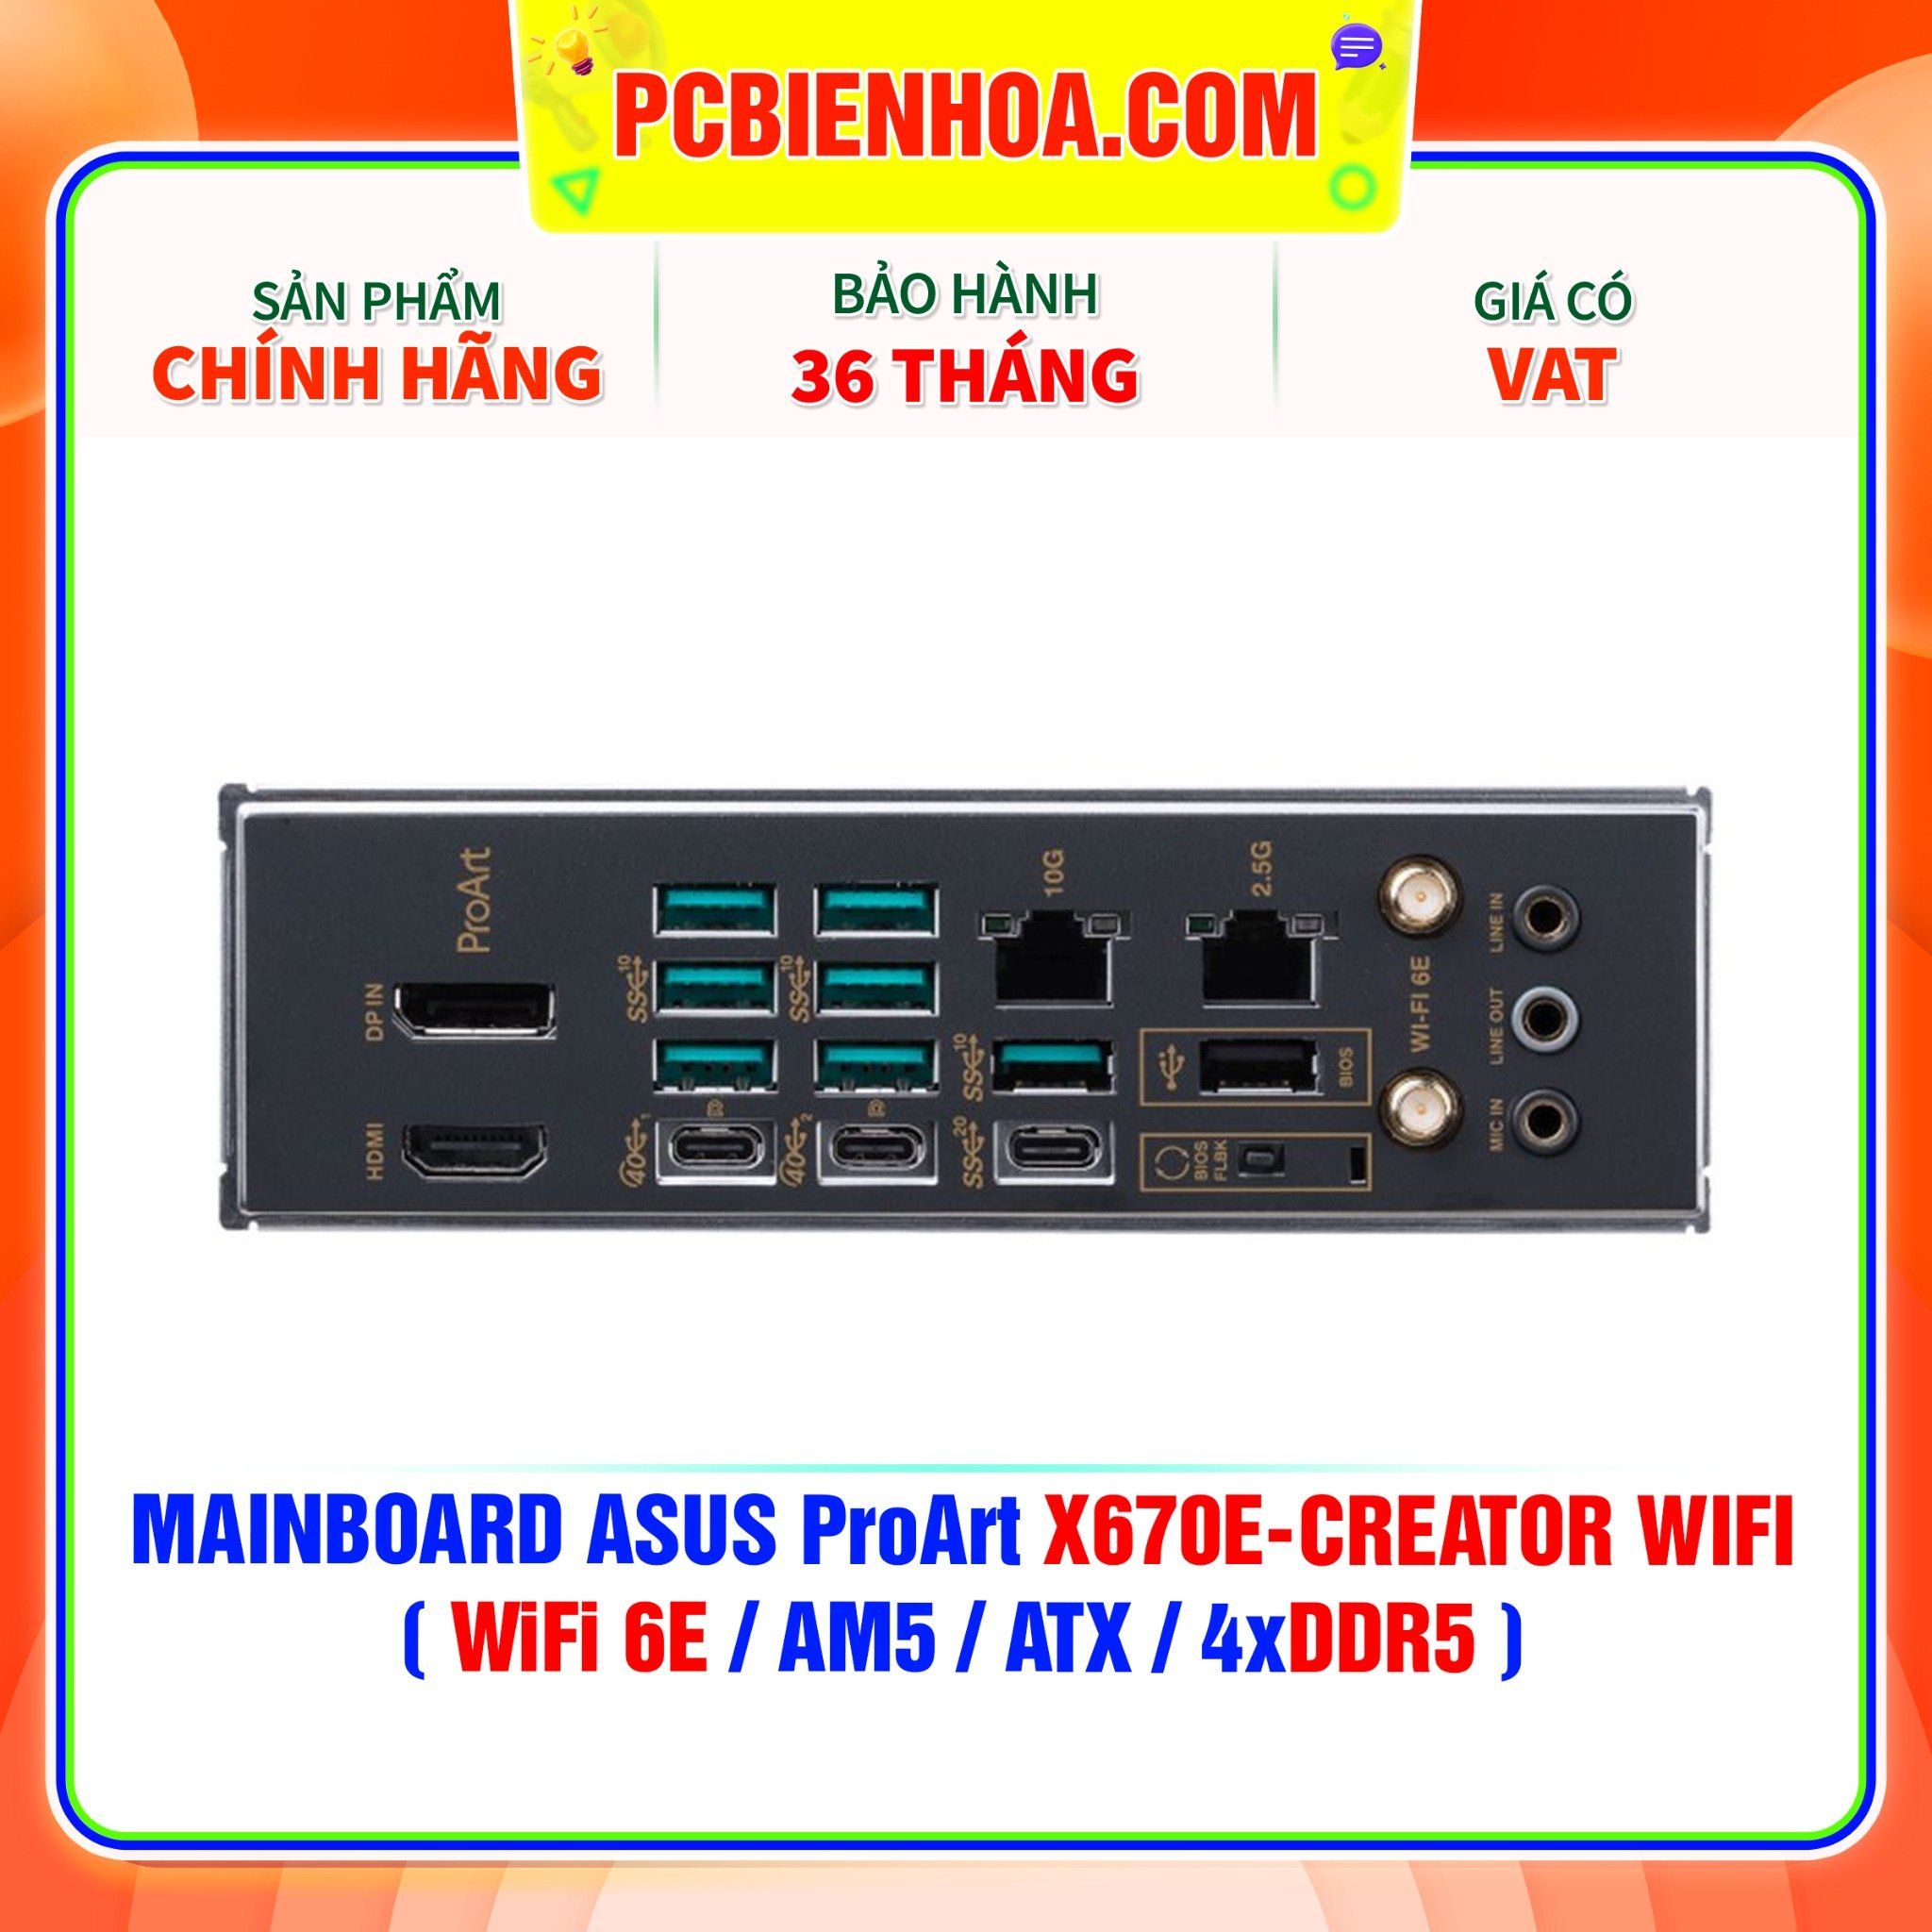  DDR5 - MAINBOARD ASUS ProArt X670E-CREATOR WIFI ( WiFi 6E / AM5 / ATX / 4xDDR5 ) 